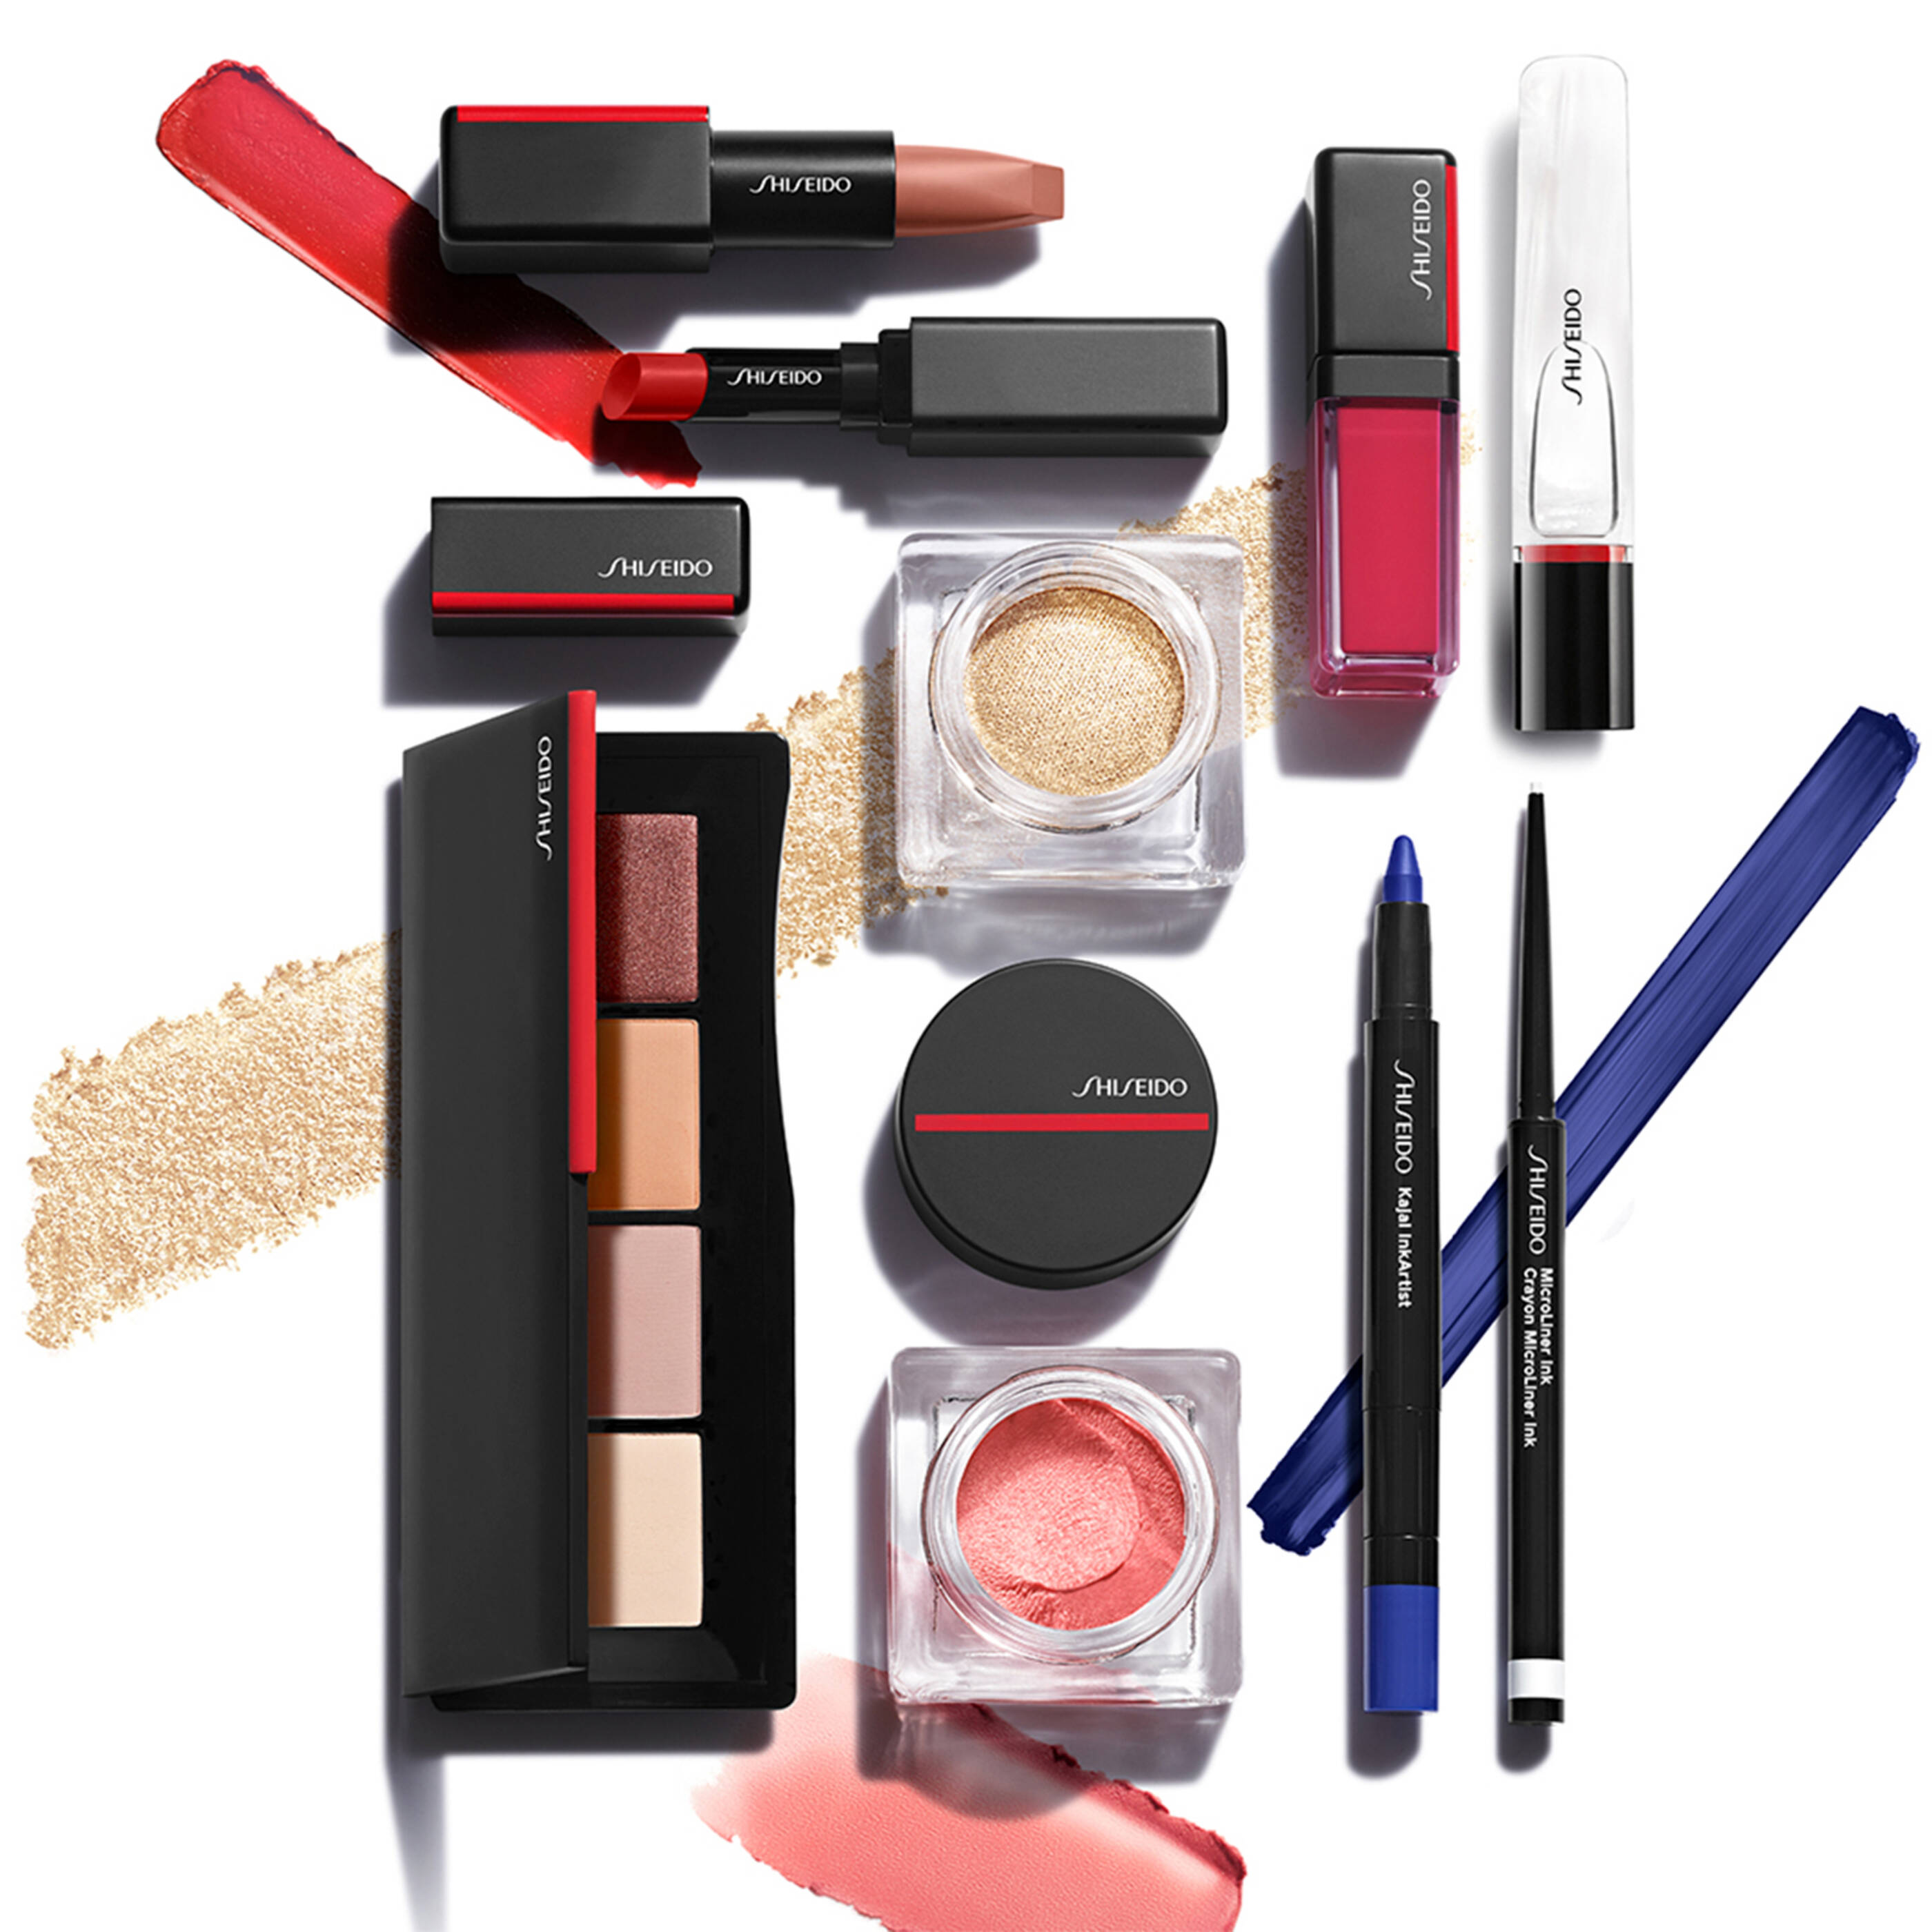 Blive opmærksom Interpretive overraskelse Shiseido produkter - Se tilbud og køb hos Matas